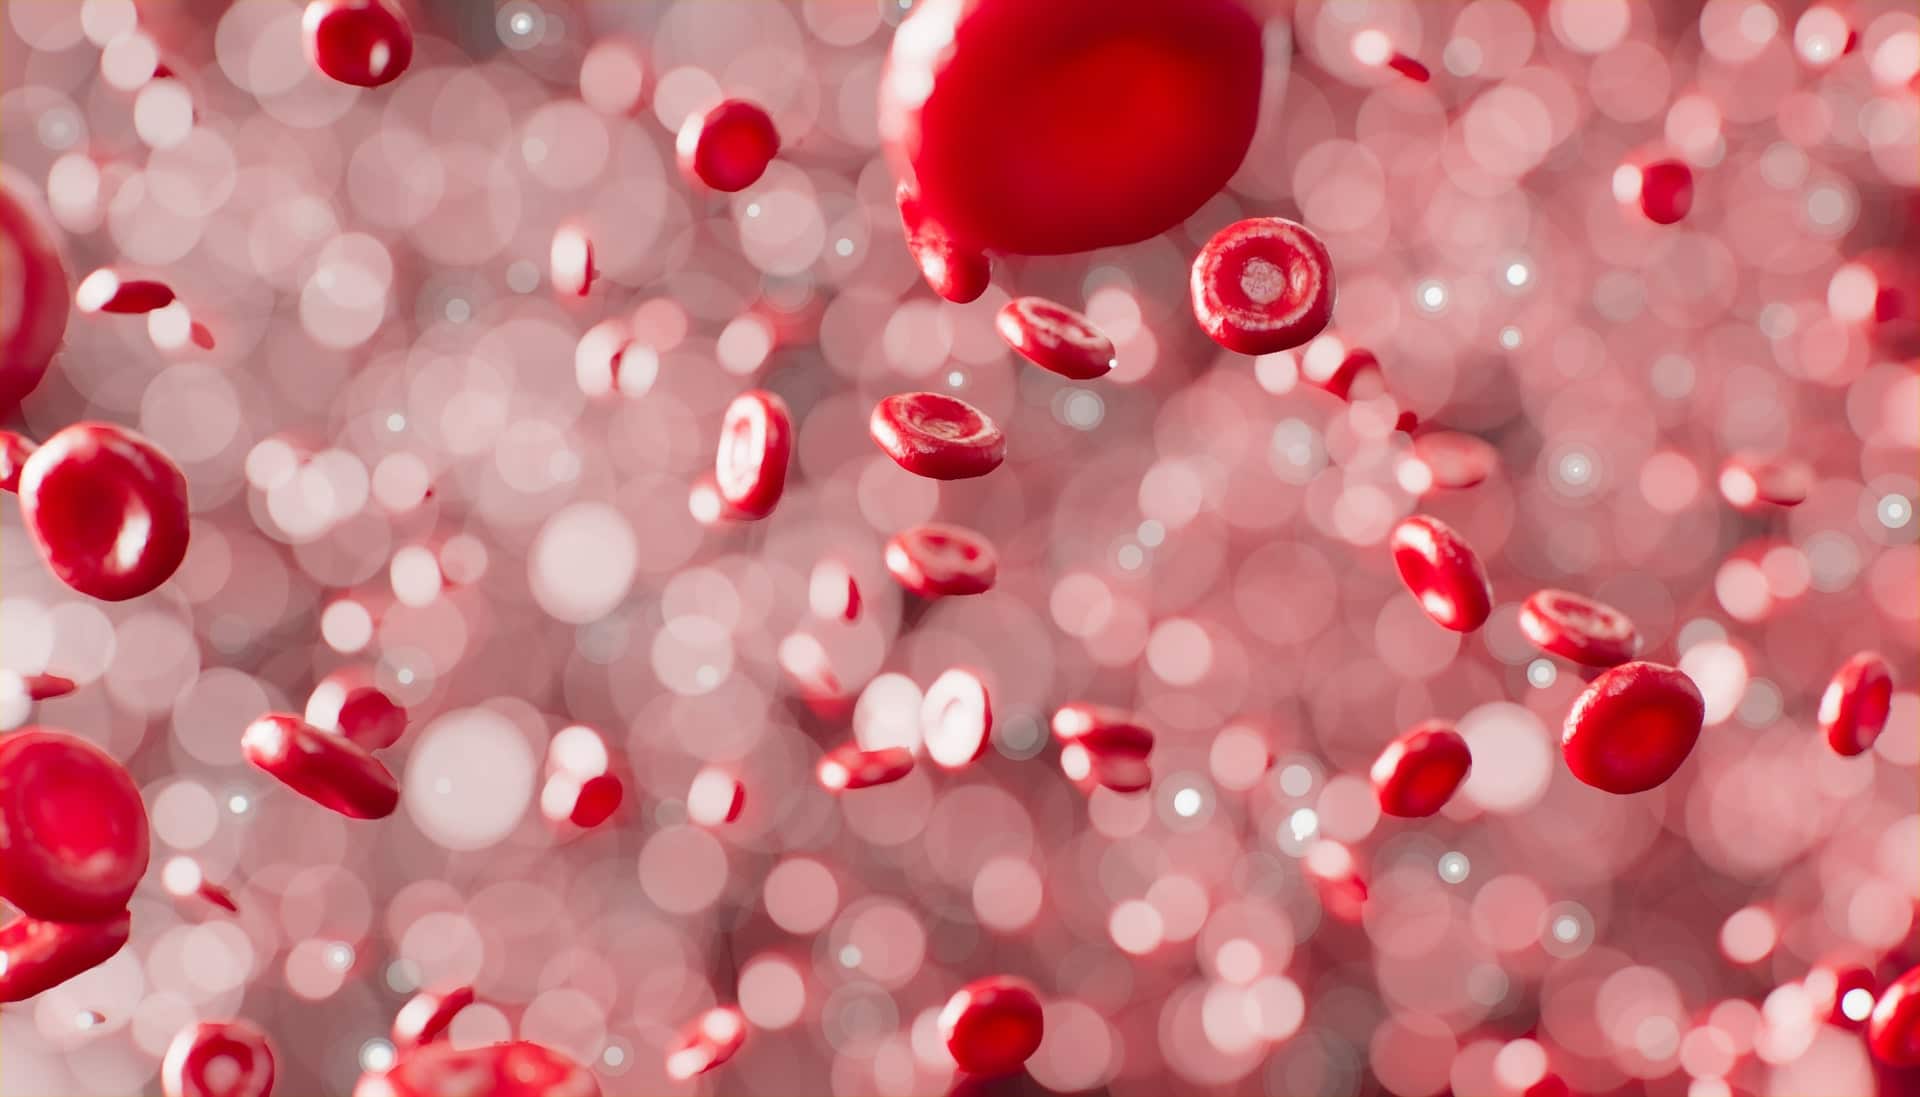 Partículas de plástico encontradas no sangue humano